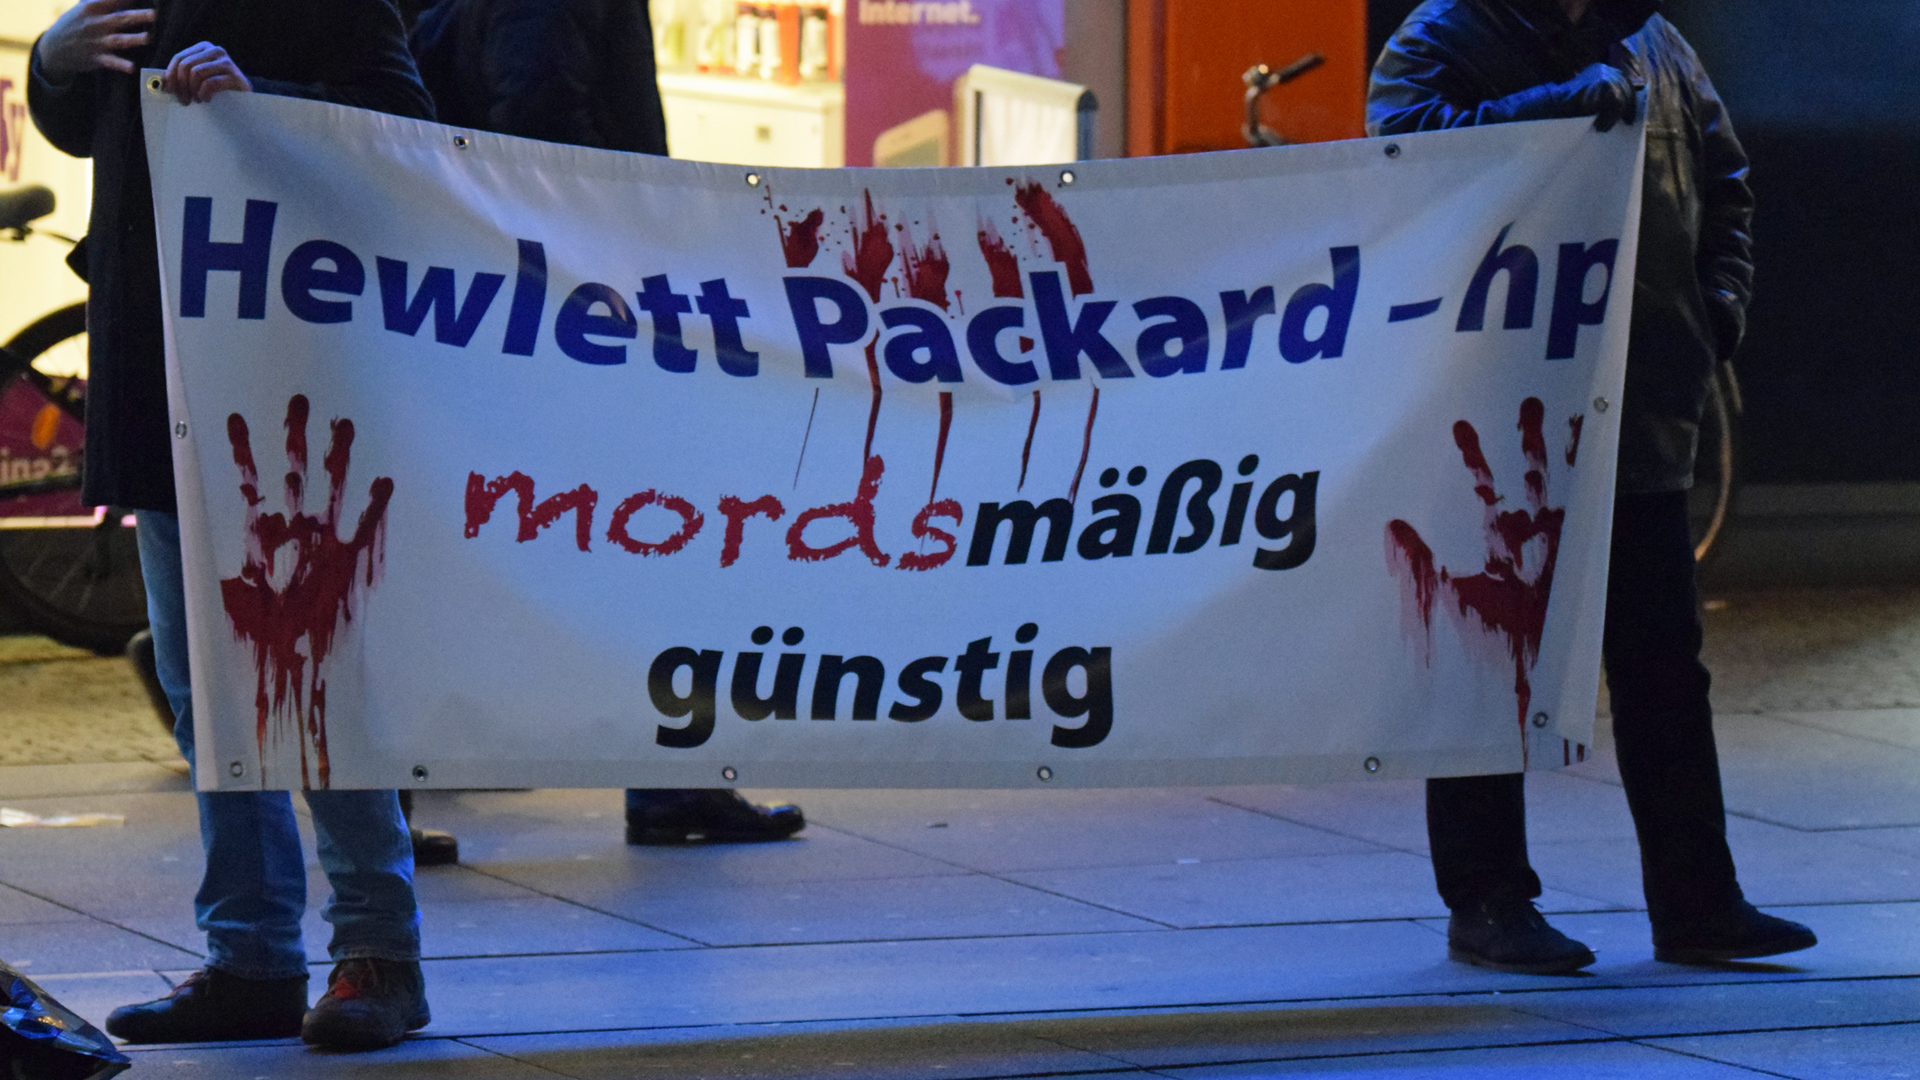 „Mordsmäßig günstig“: Auf diese Weise kritisiert die BDS-Demonstration die amerikanische Firma Hewlett Packard